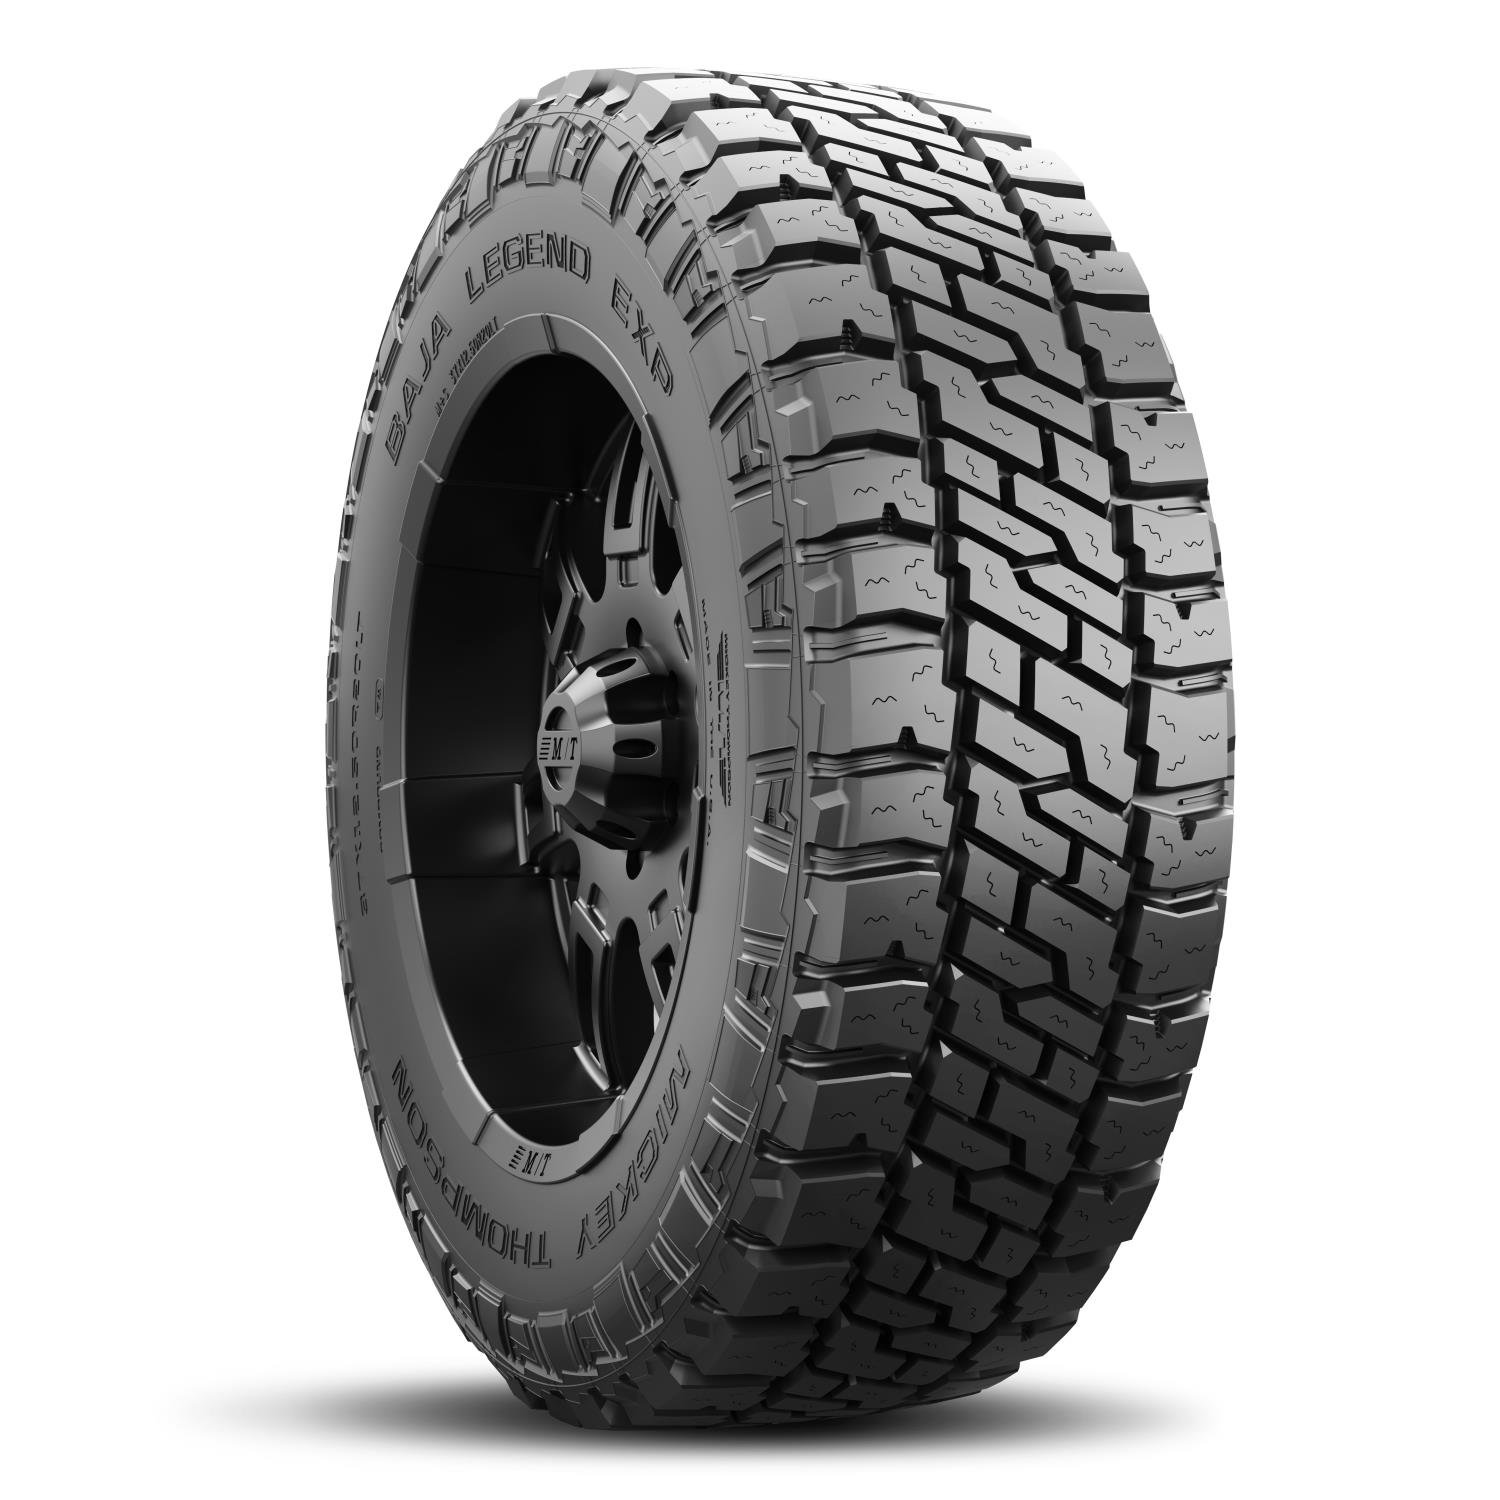 Baja Legend EXP Tire 37X12.50R17LT